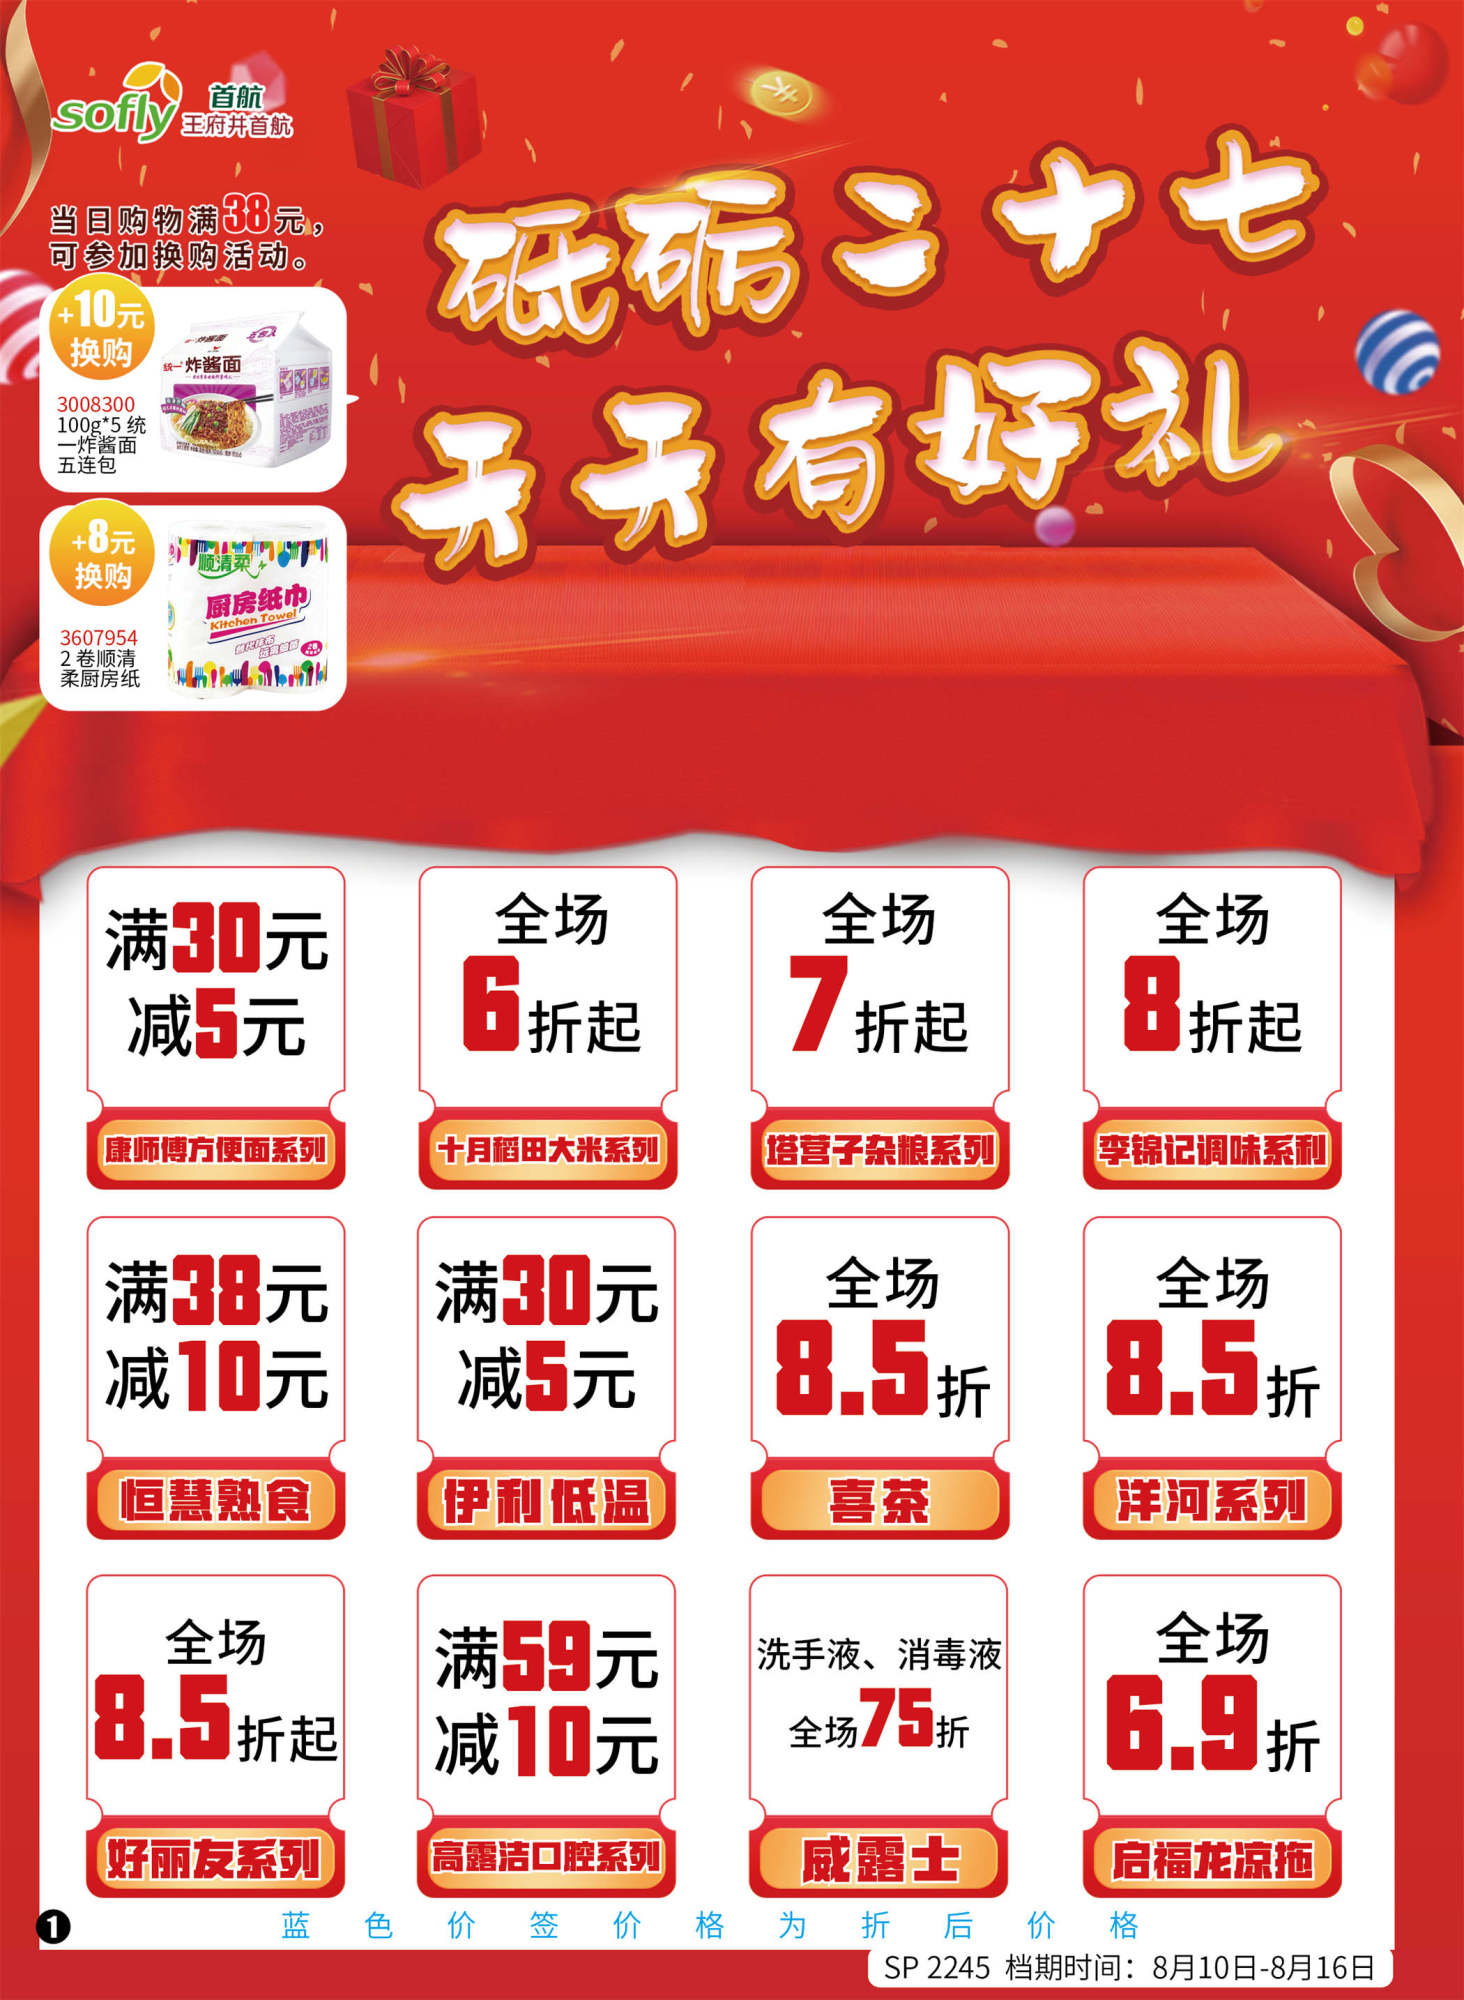 北京首航超市促销海报（第2245期）